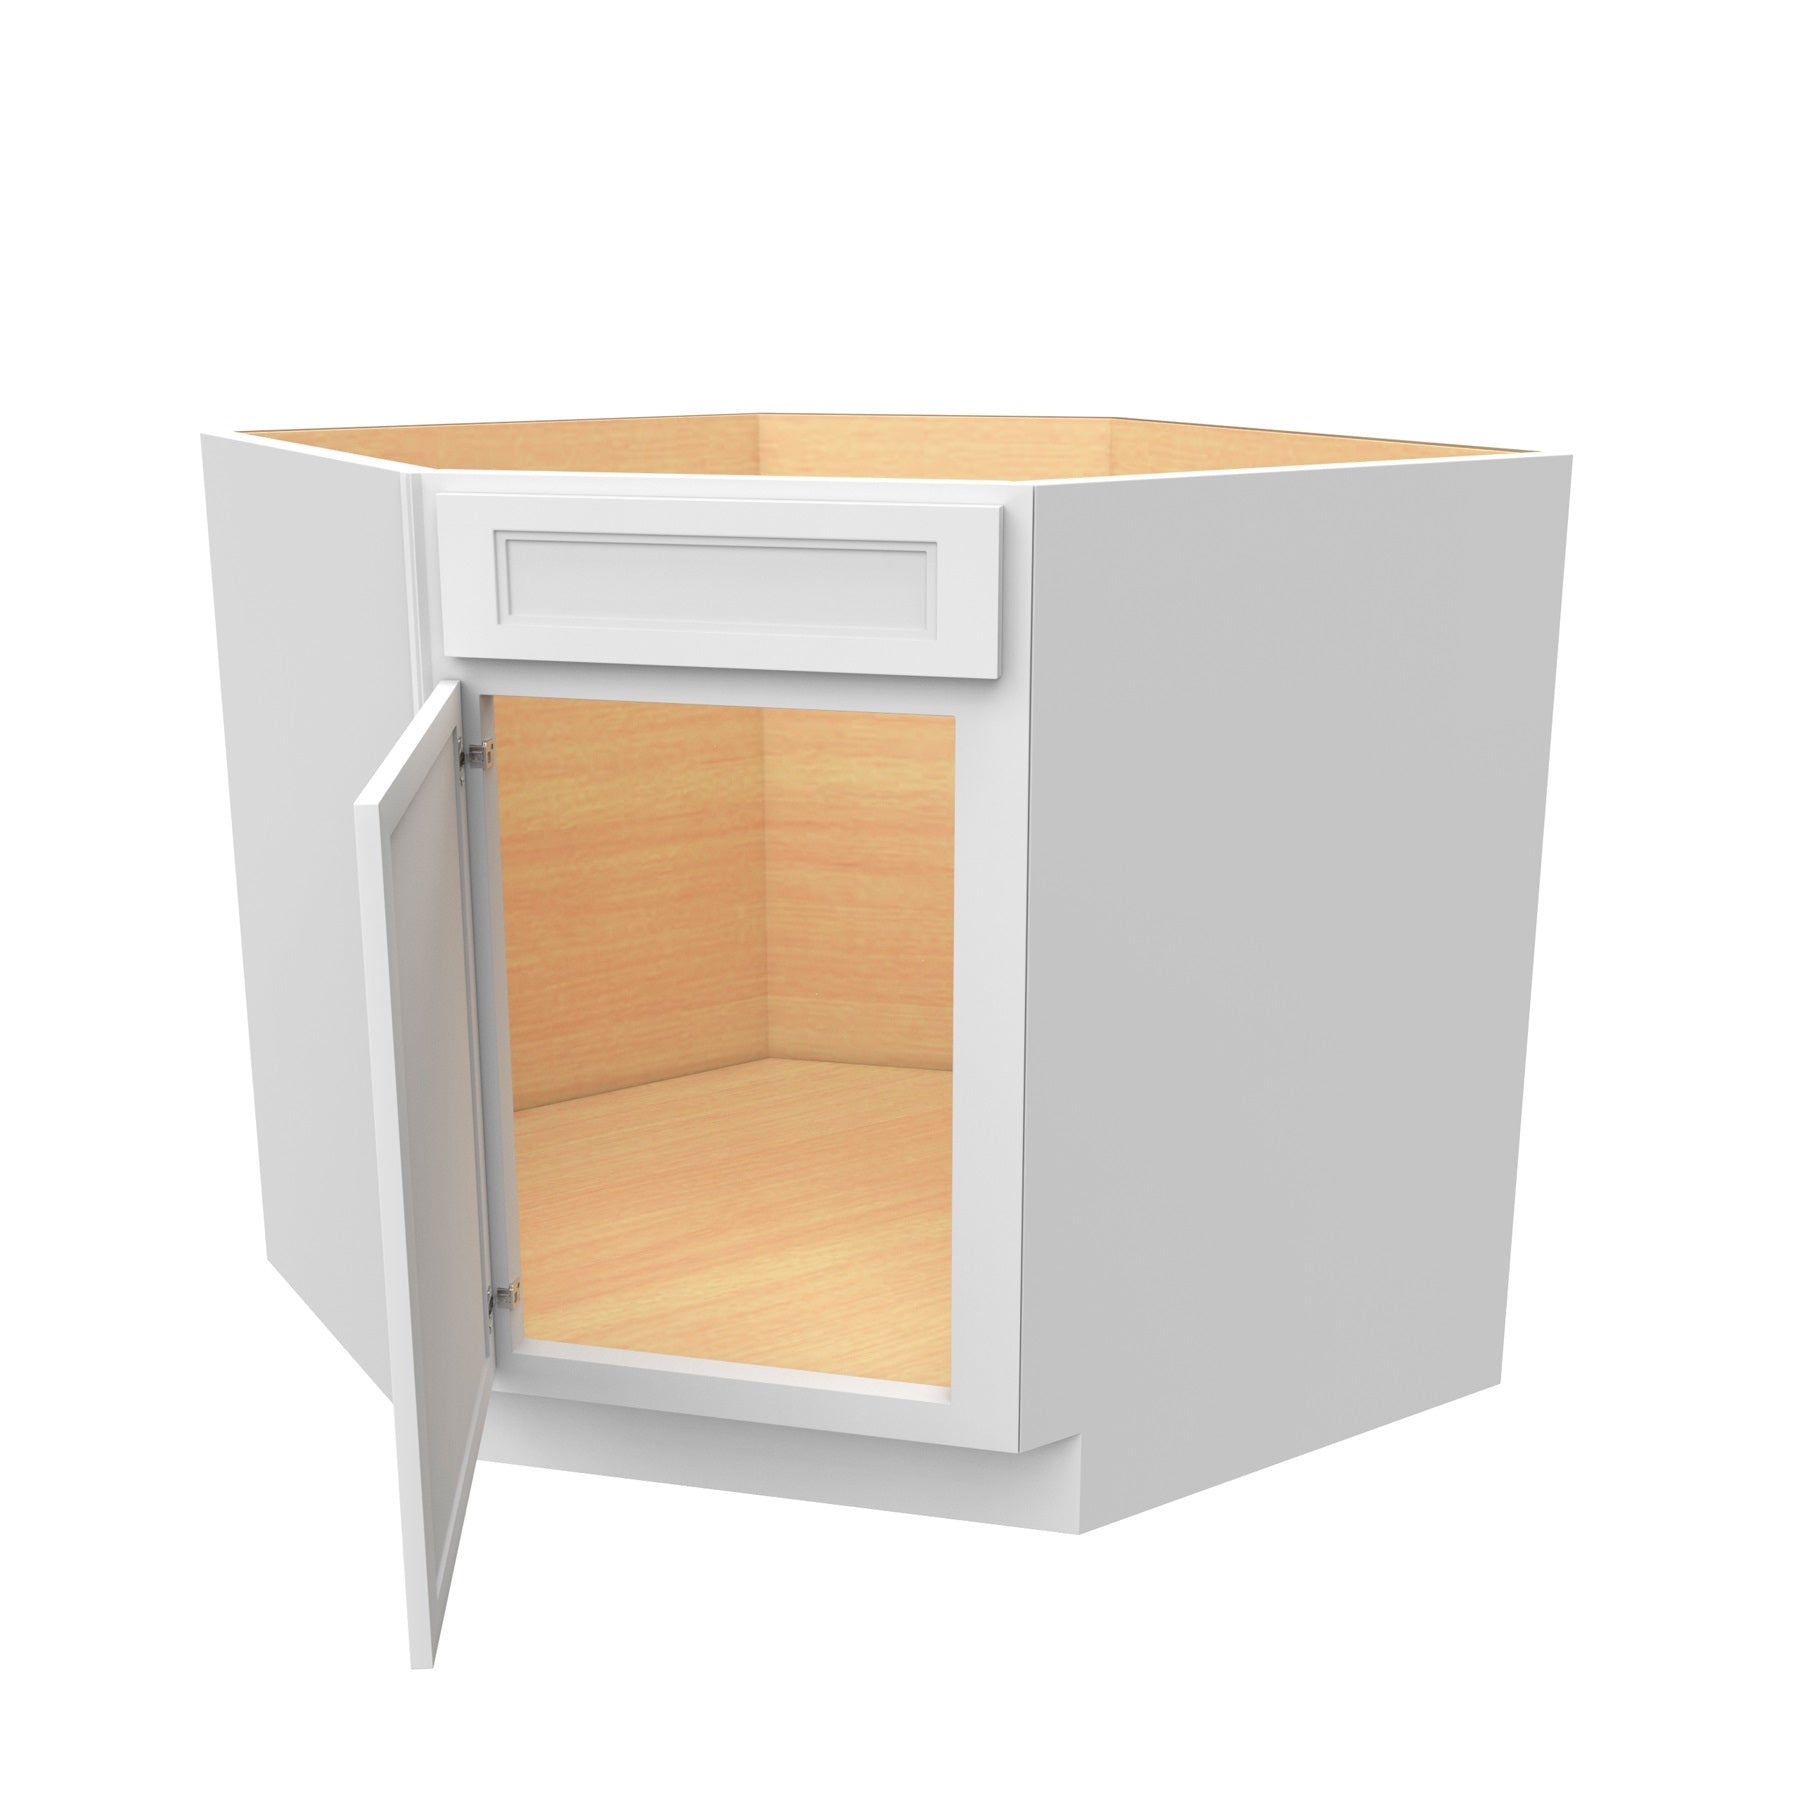 RTA - Fashion White - Diagonal Corner Sink Base Cabinet  | 36"W x 34.5"H x 24"D